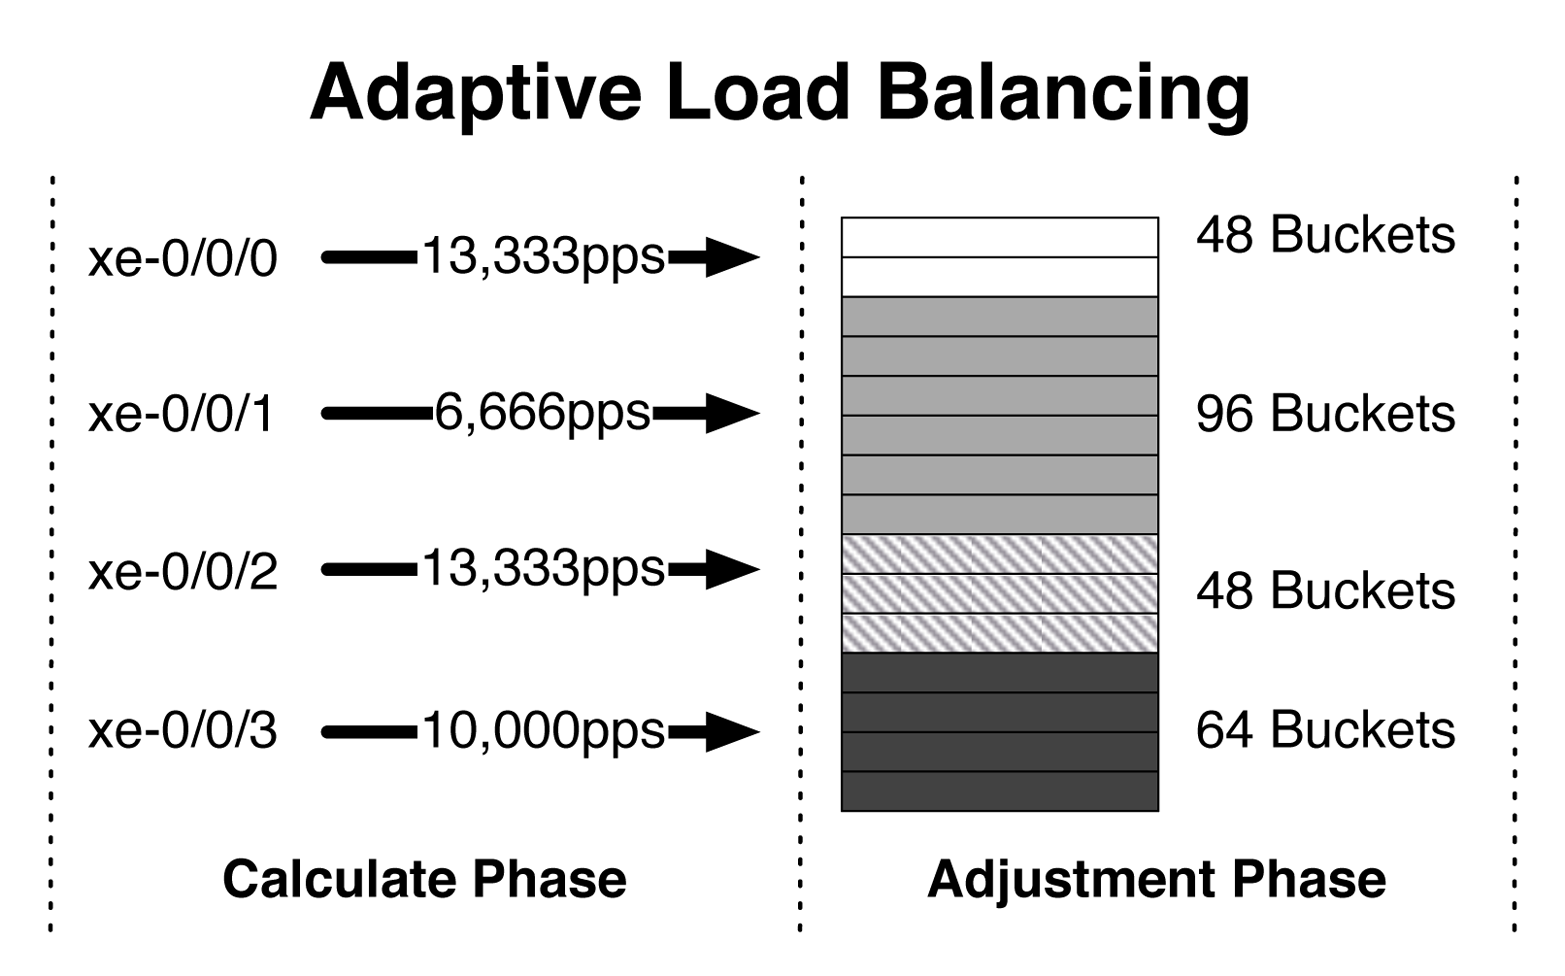 Adaptive load balancing